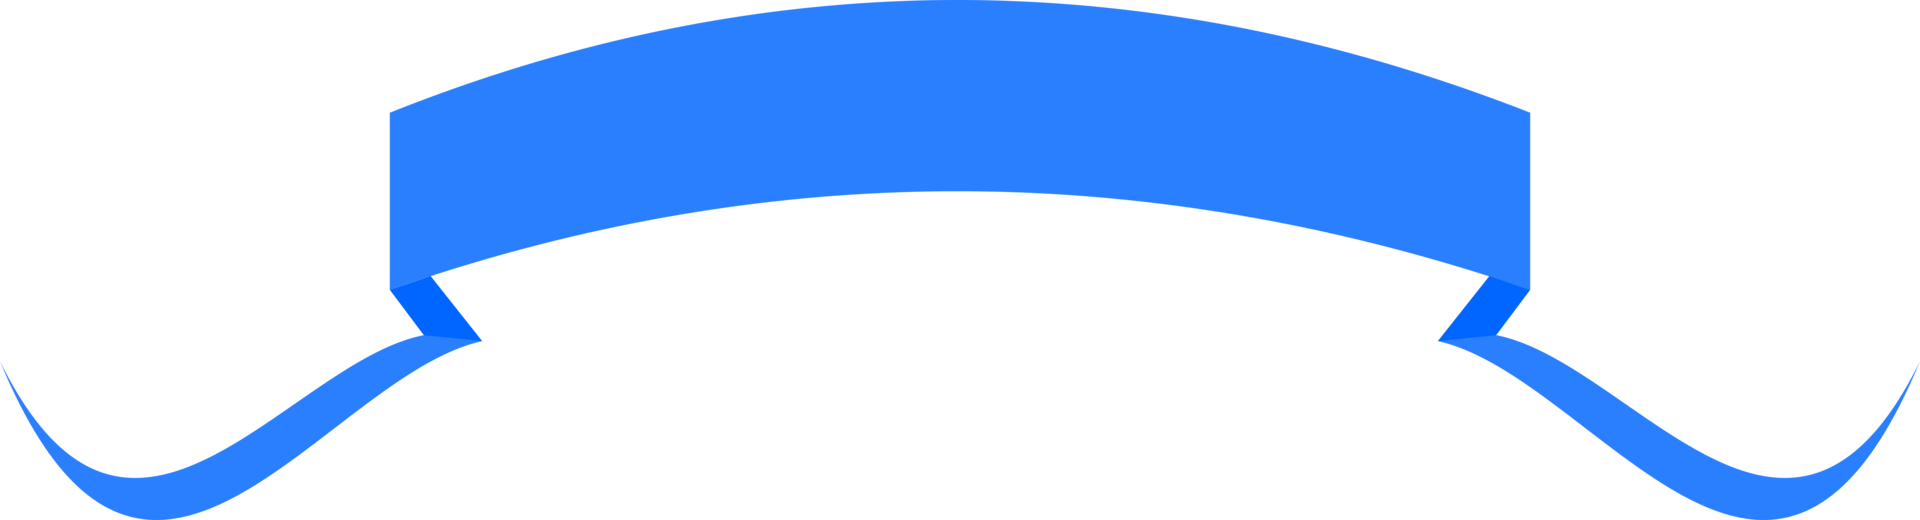 bandera de la cinta azul png